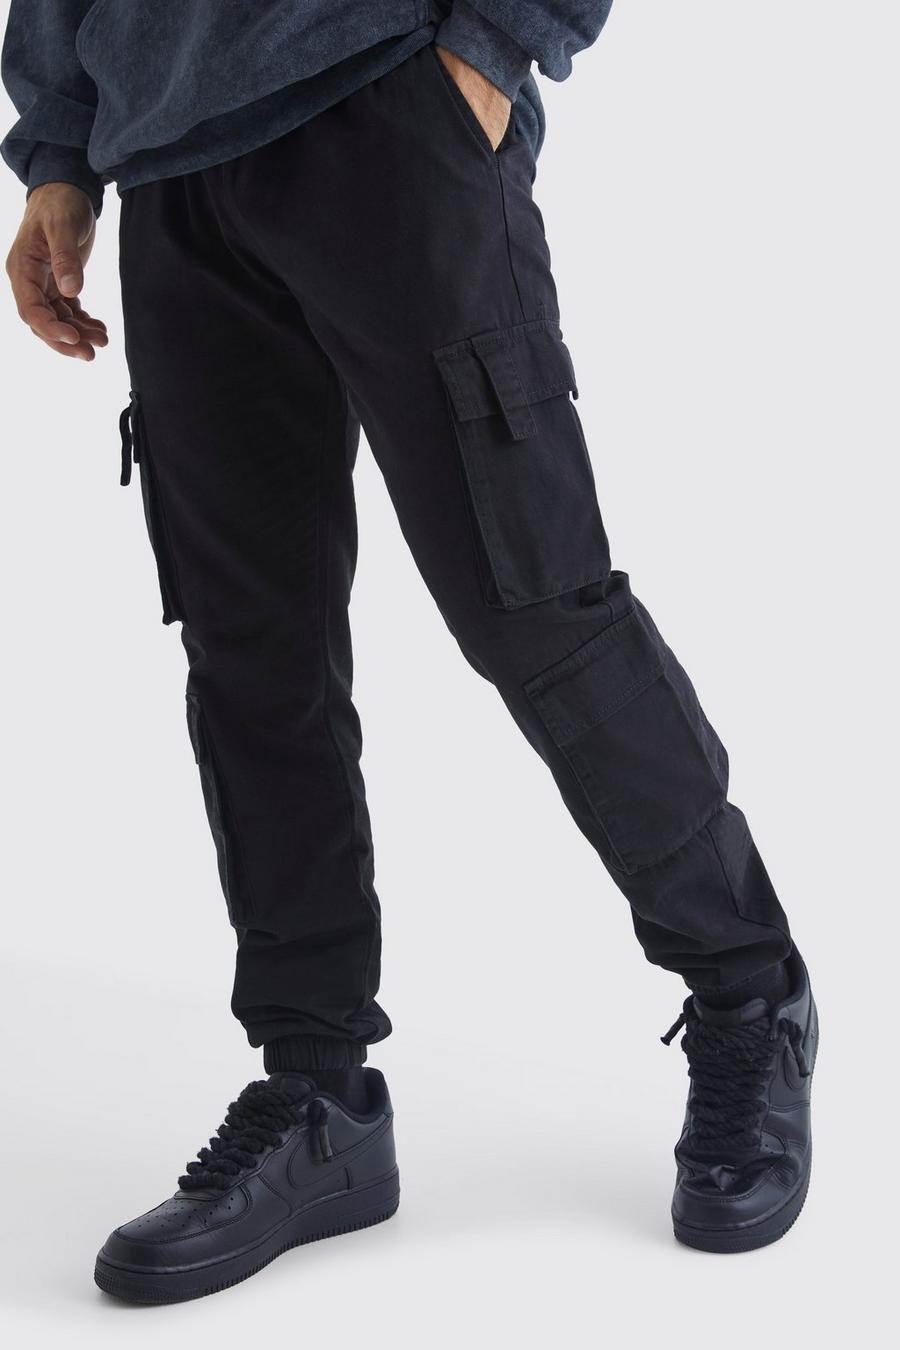 Pantaloni tuta Slim Fit con tasche Cargo e vita elasticizzata, Black